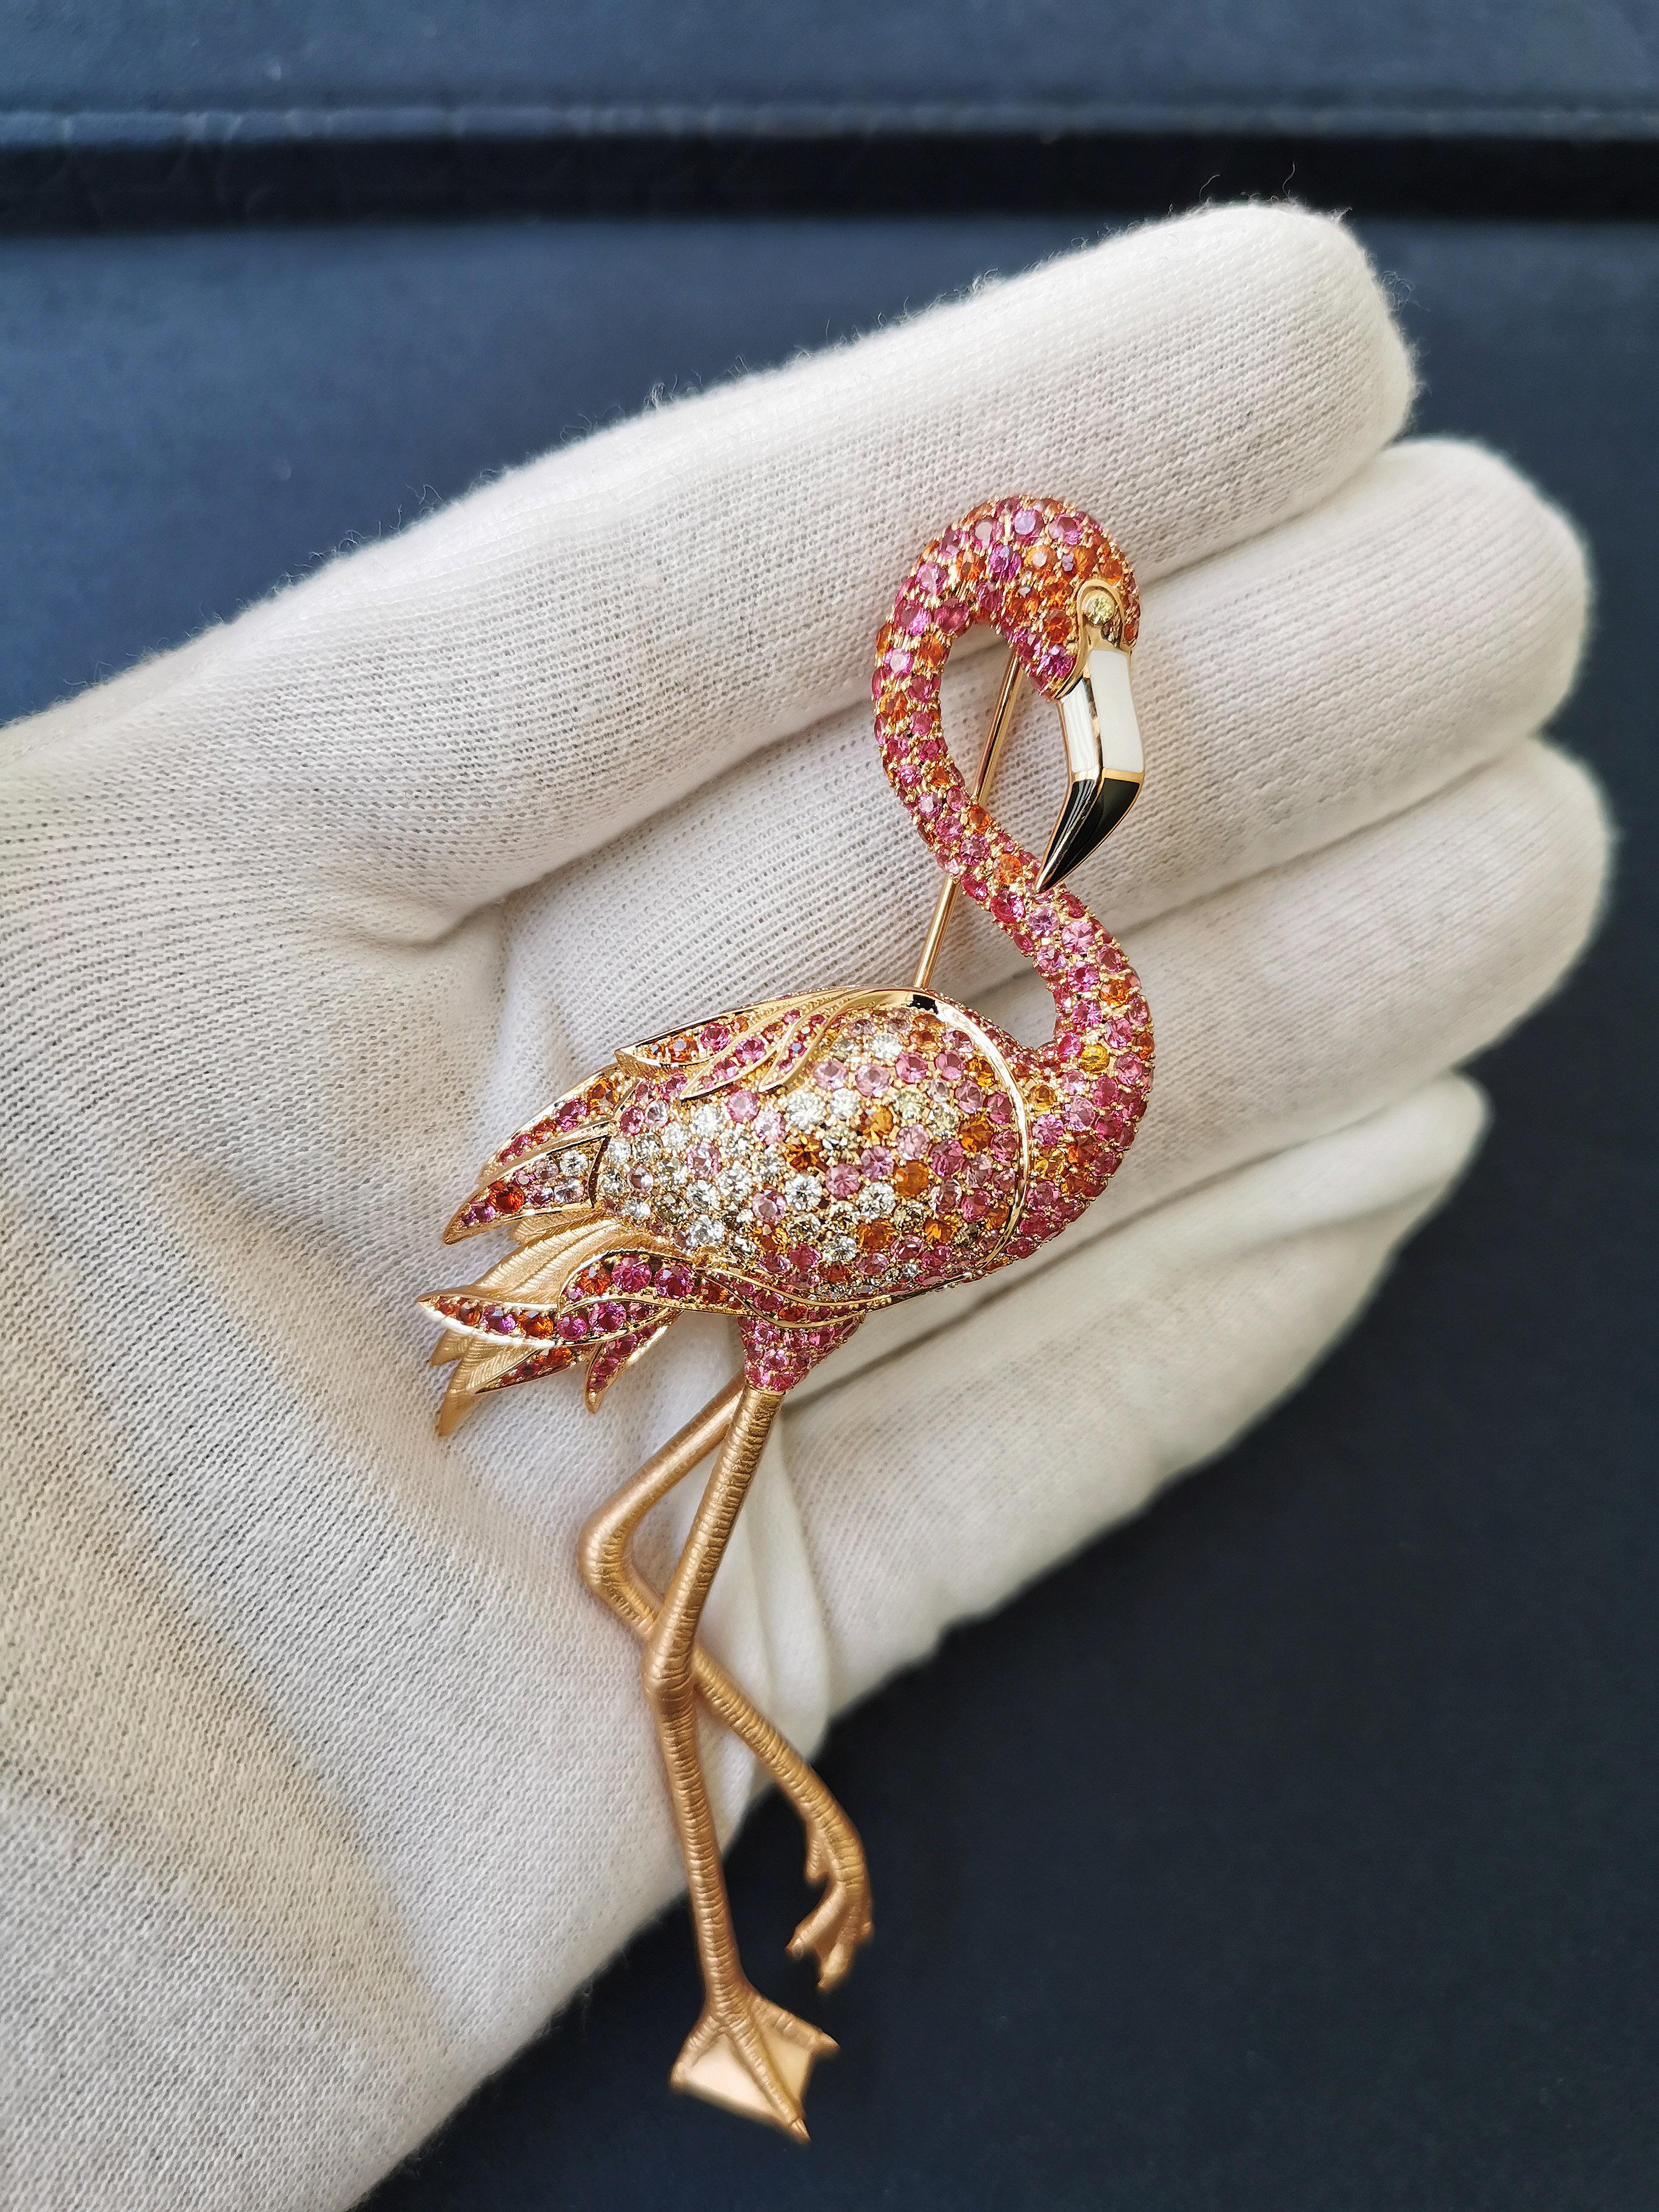 Flamingo-Brosche aus 18 Karat Roségold mit Diamanten, rosa, orange, Saphiren und Emaille
Wir haben uns entschieden, einen der schönsten Vögel der Welt zu repräsentieren - Flamingos. Der Vogel ist aus 18 Karat Roségold gefertigt. Die Beine sind so